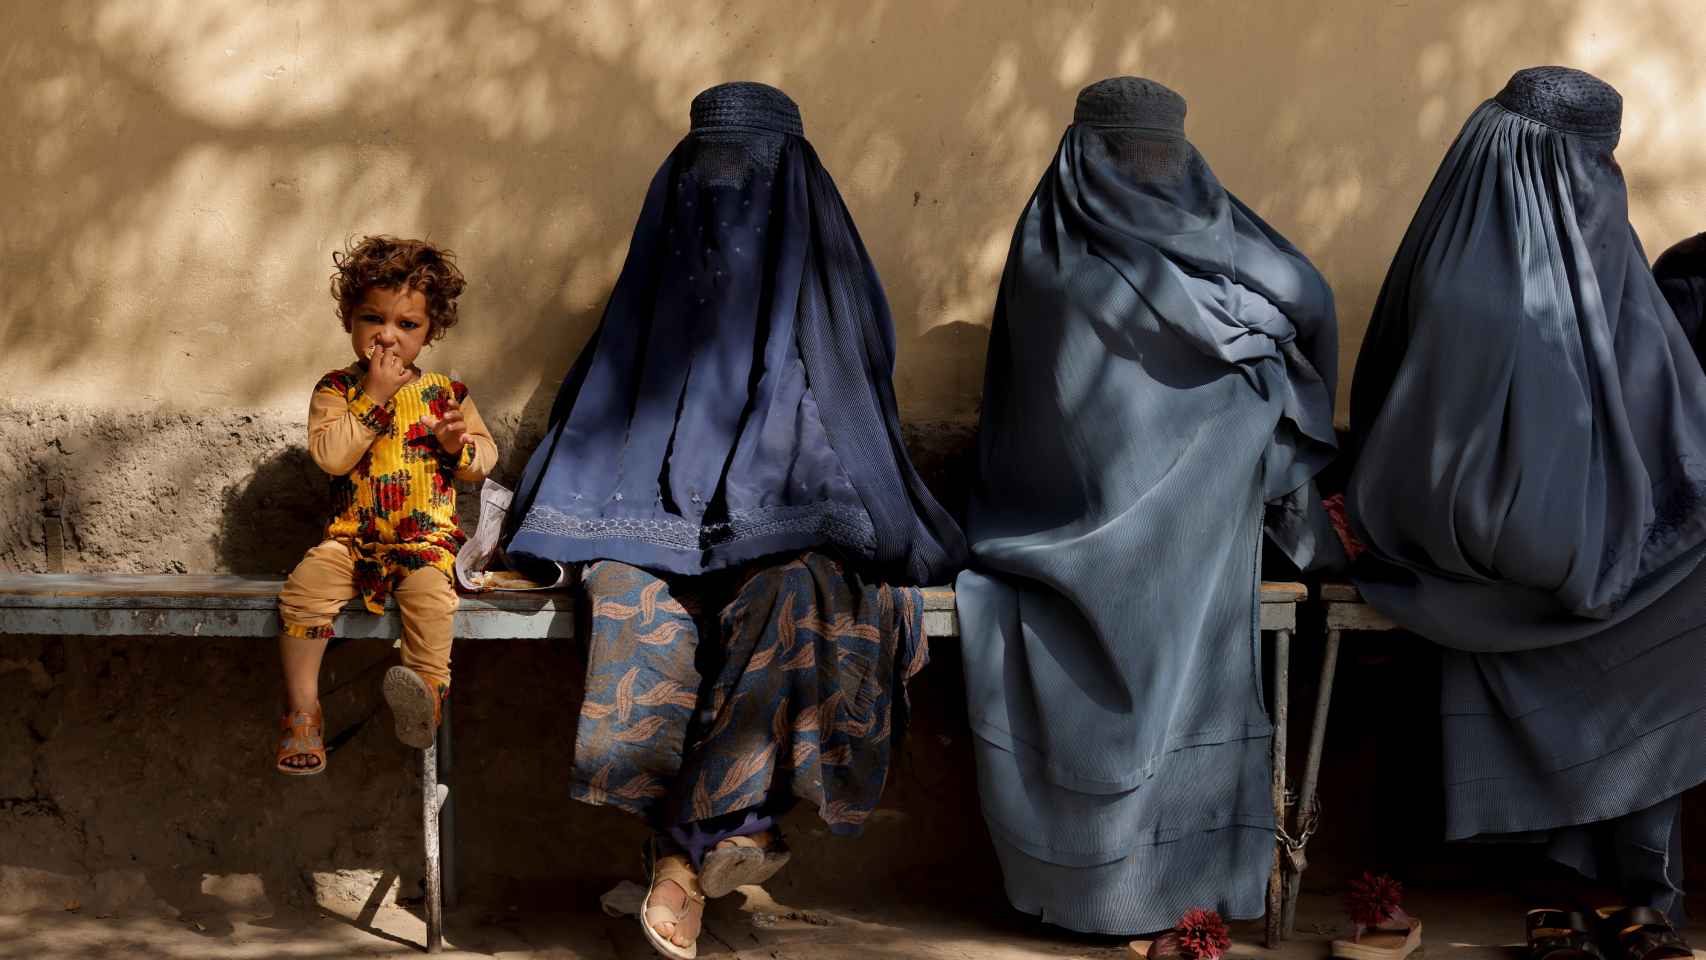 Una niña junto a tres mujeres cubiertas por burkas sentadas afuera de un hospital de Kabul, Afganistán.